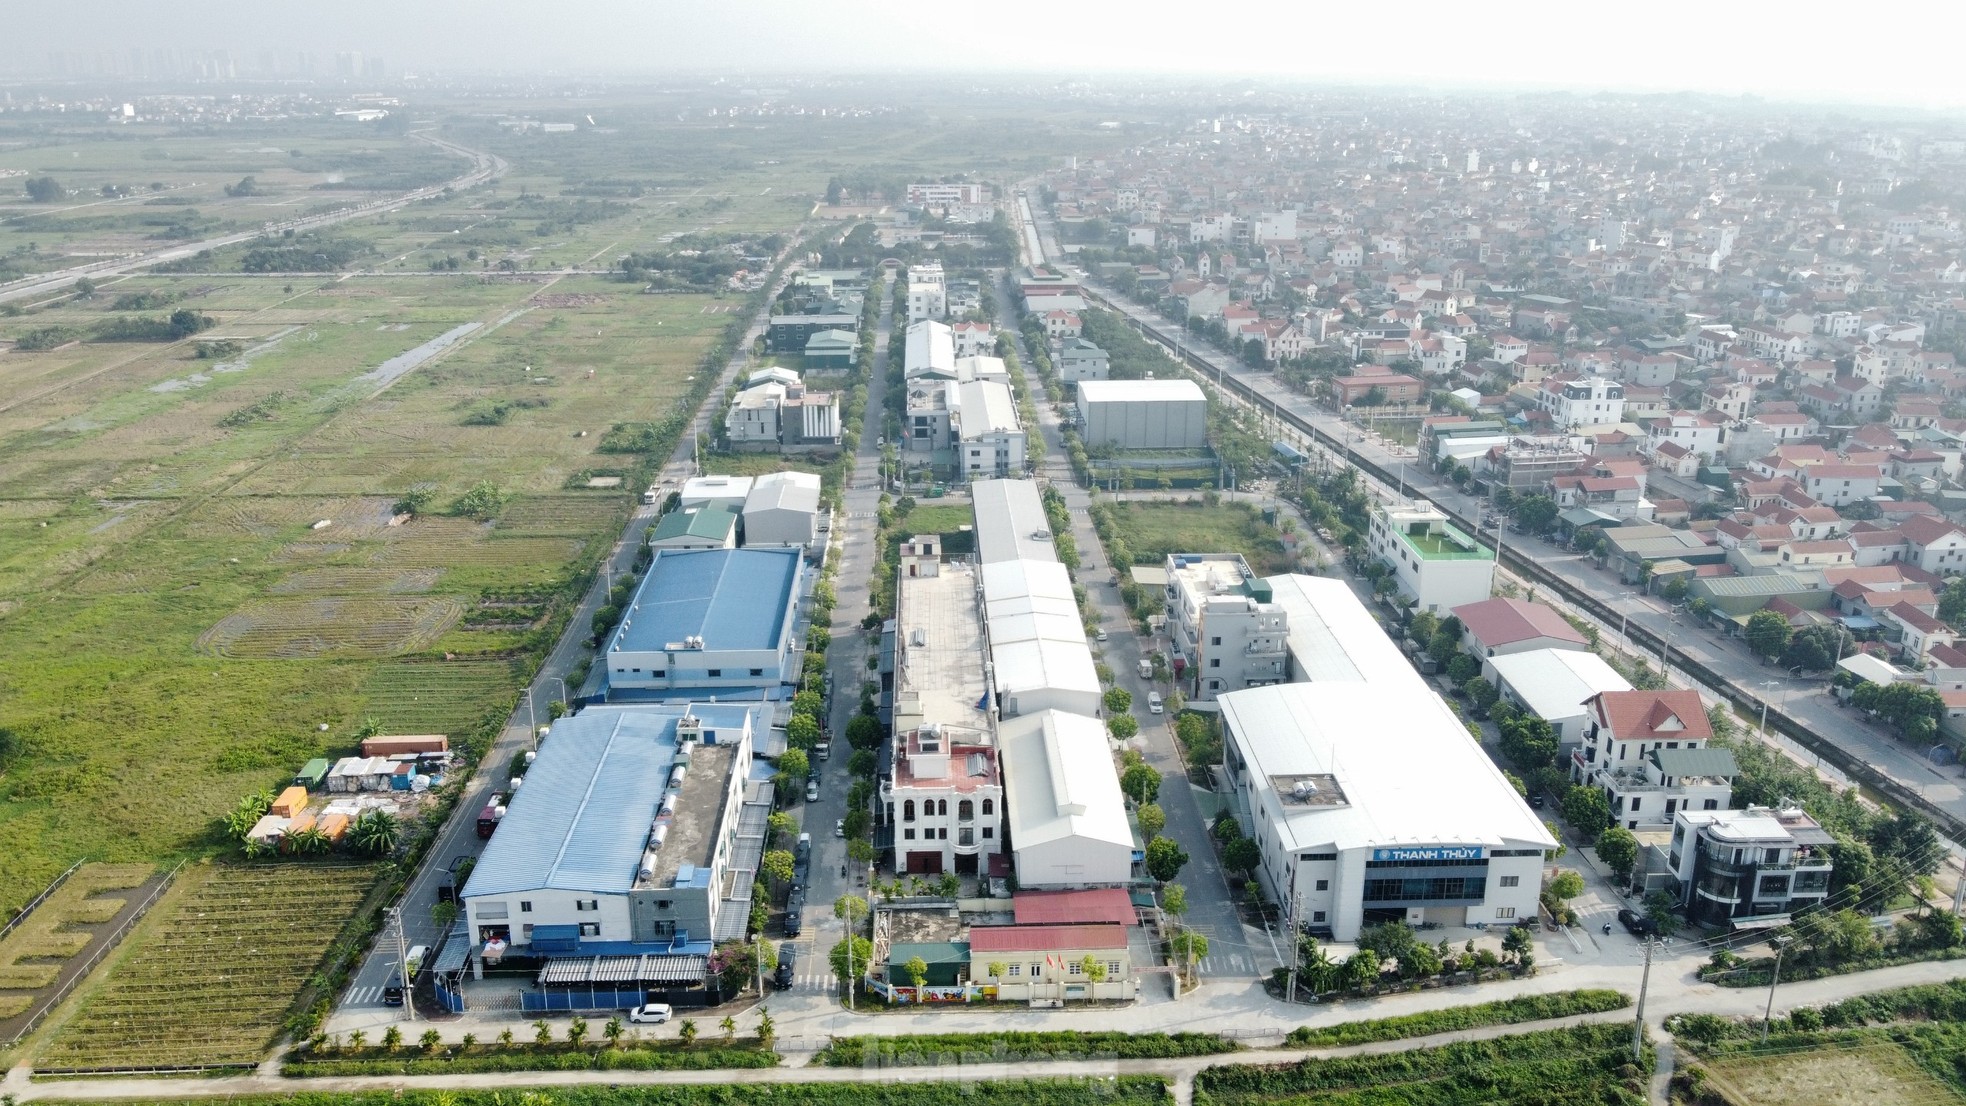 Cận cảnh loạt biệt thự 'mọc' trong cụm công nghiệp làng nghề ở Hà Nội - Ảnh 1.